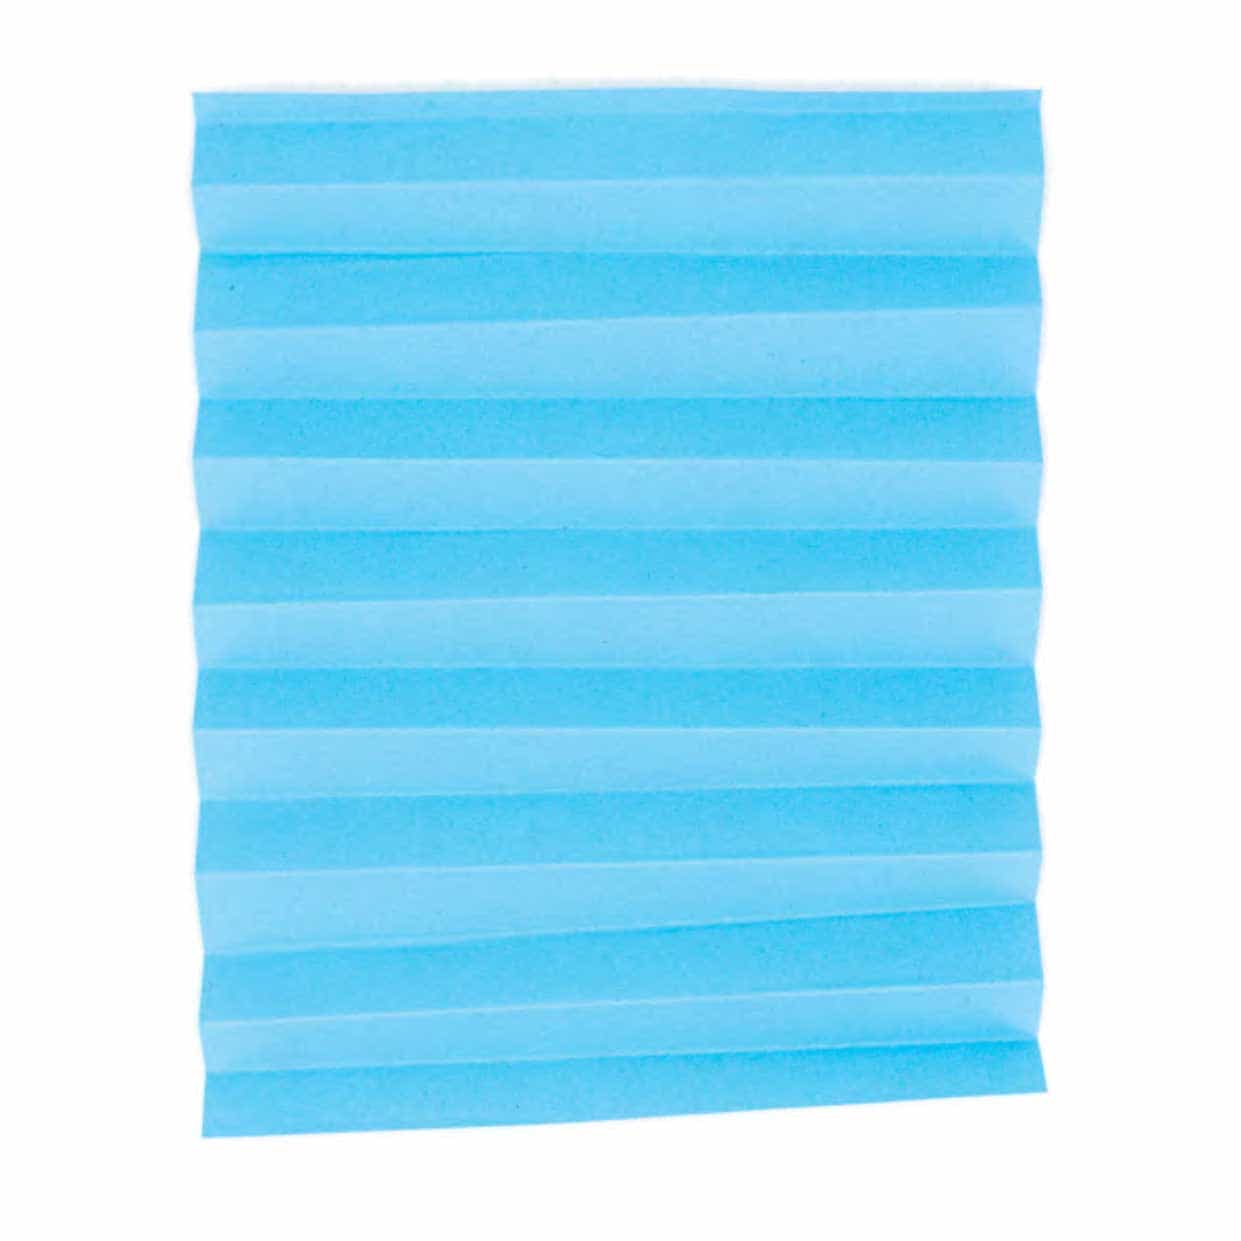 Gevouwen blauw papier op een witte achtergrond